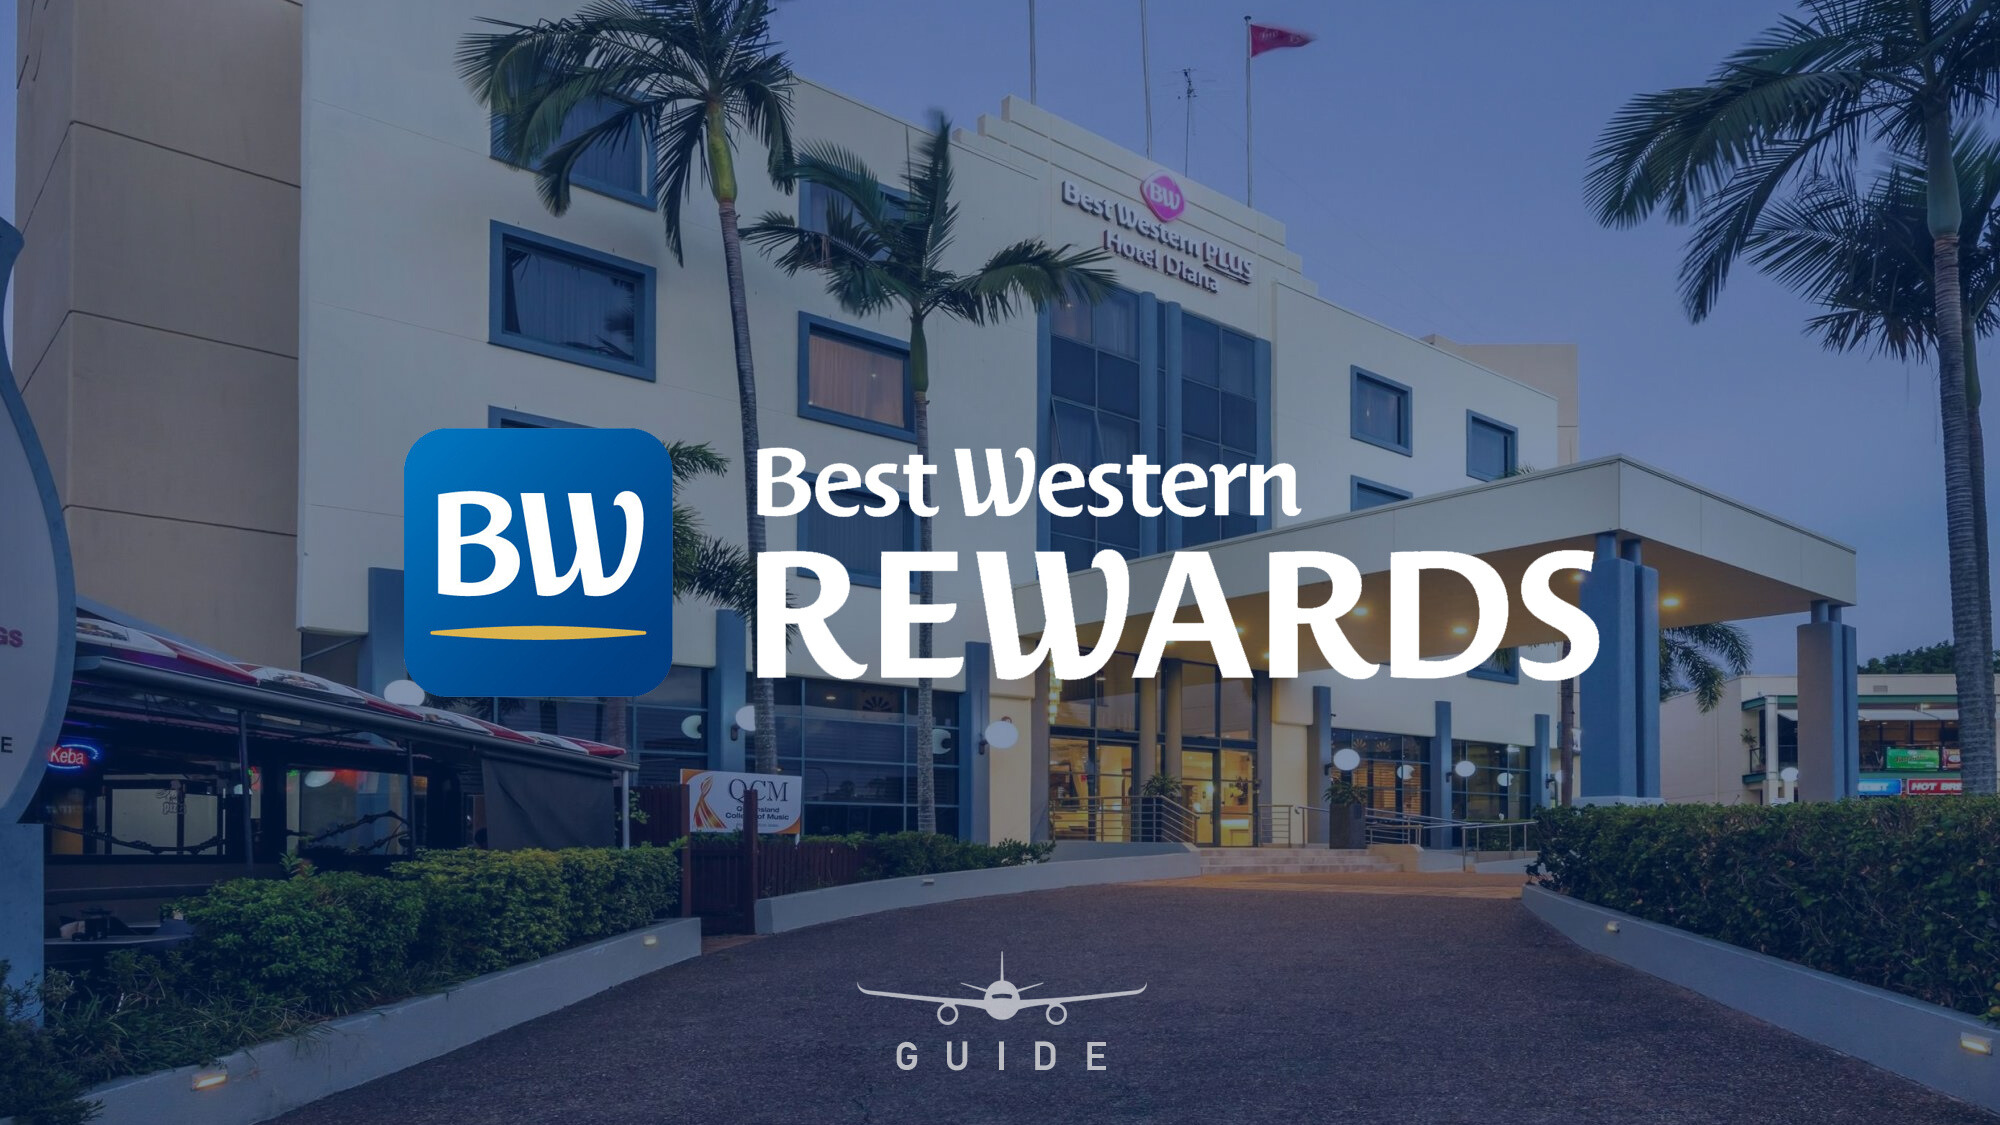 Uno de los hoteles que forma parte el Best Western Rewards